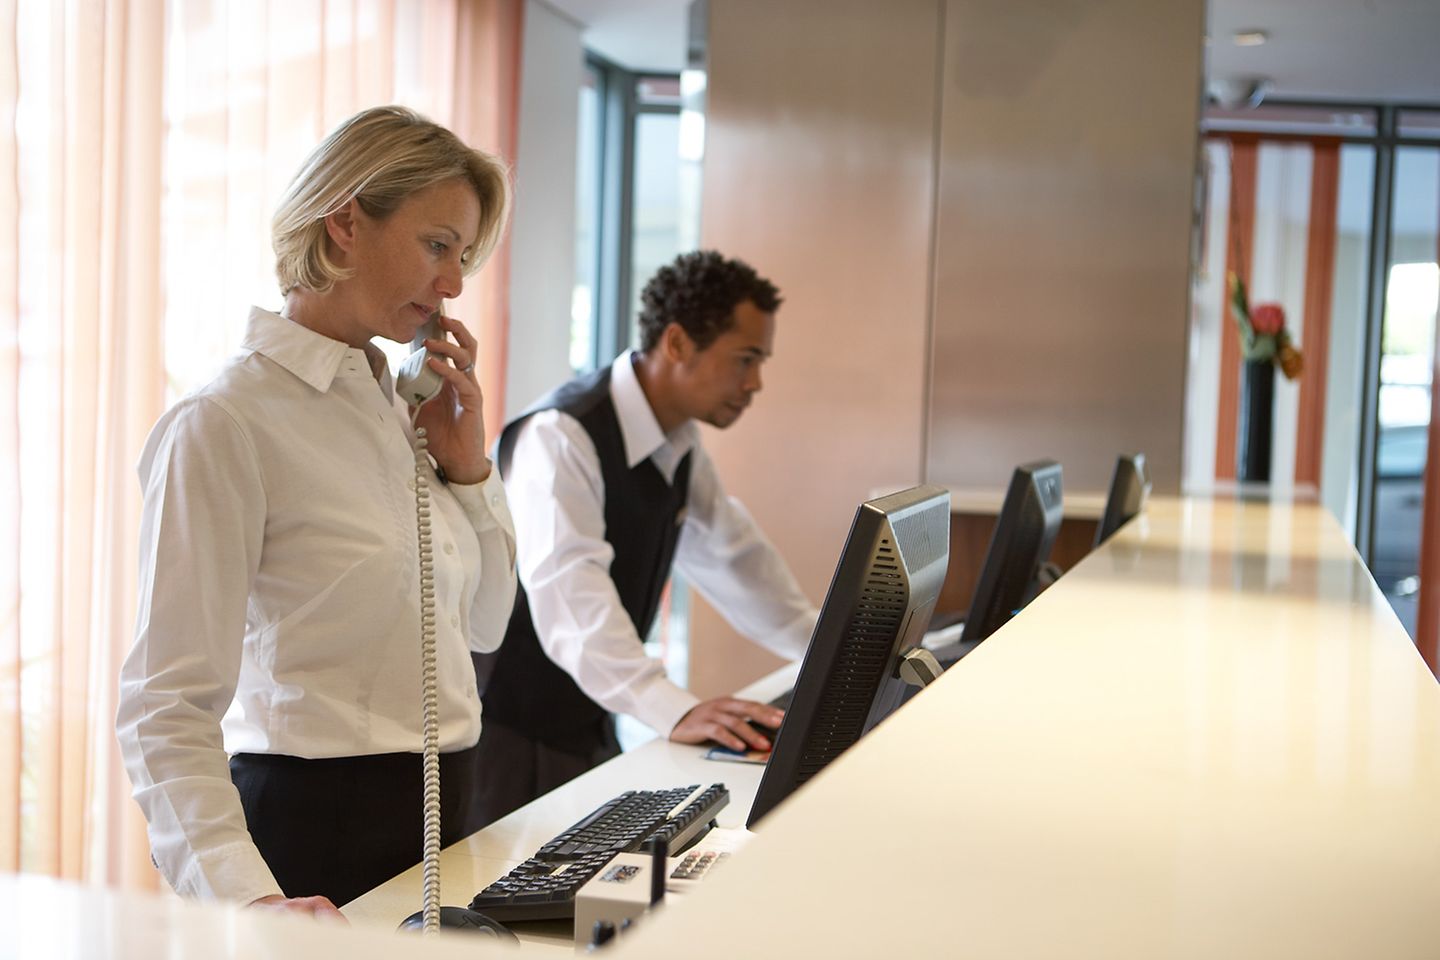 Uma recepcionista faz uma ligação atrás da recepção do hotel. Seu colega verifica os dados no computador